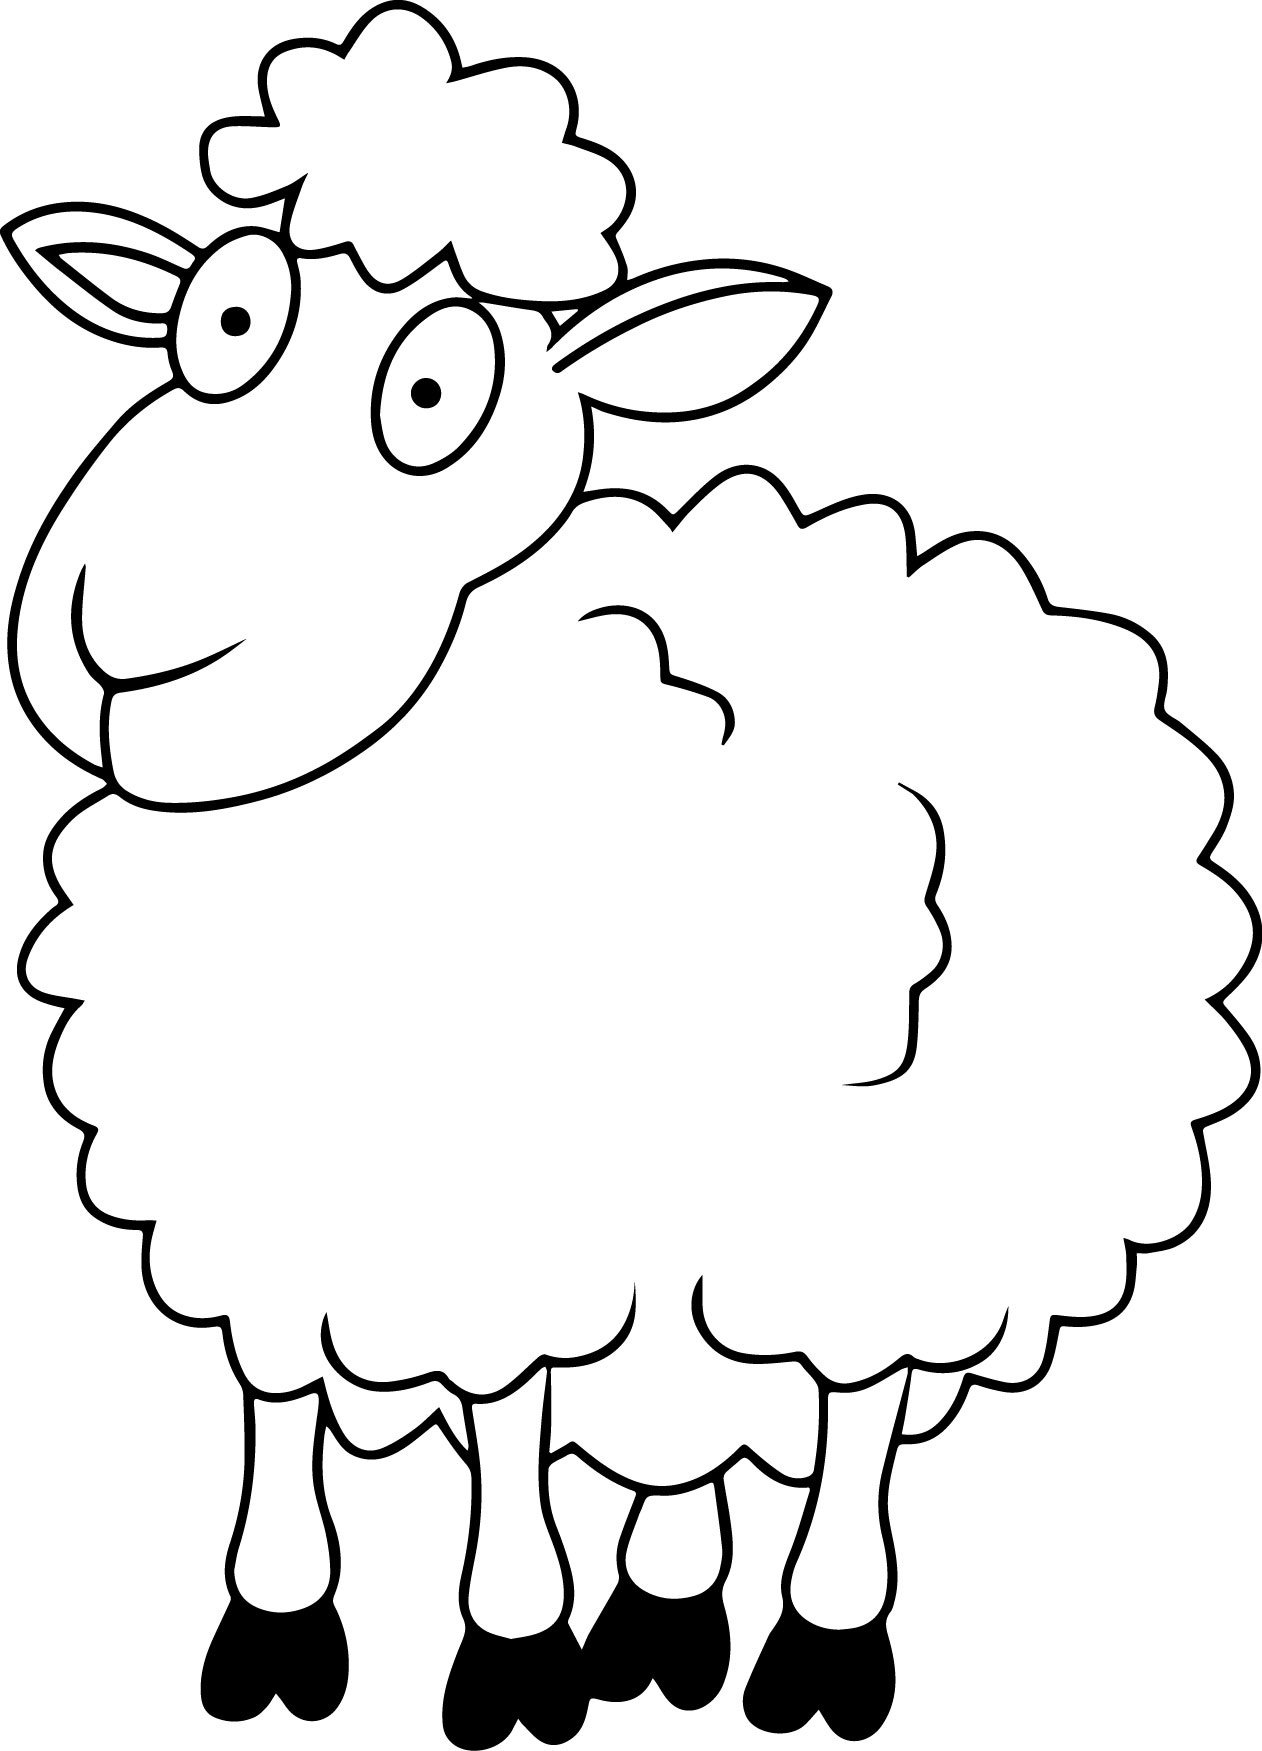 Овца рисунок карандашом